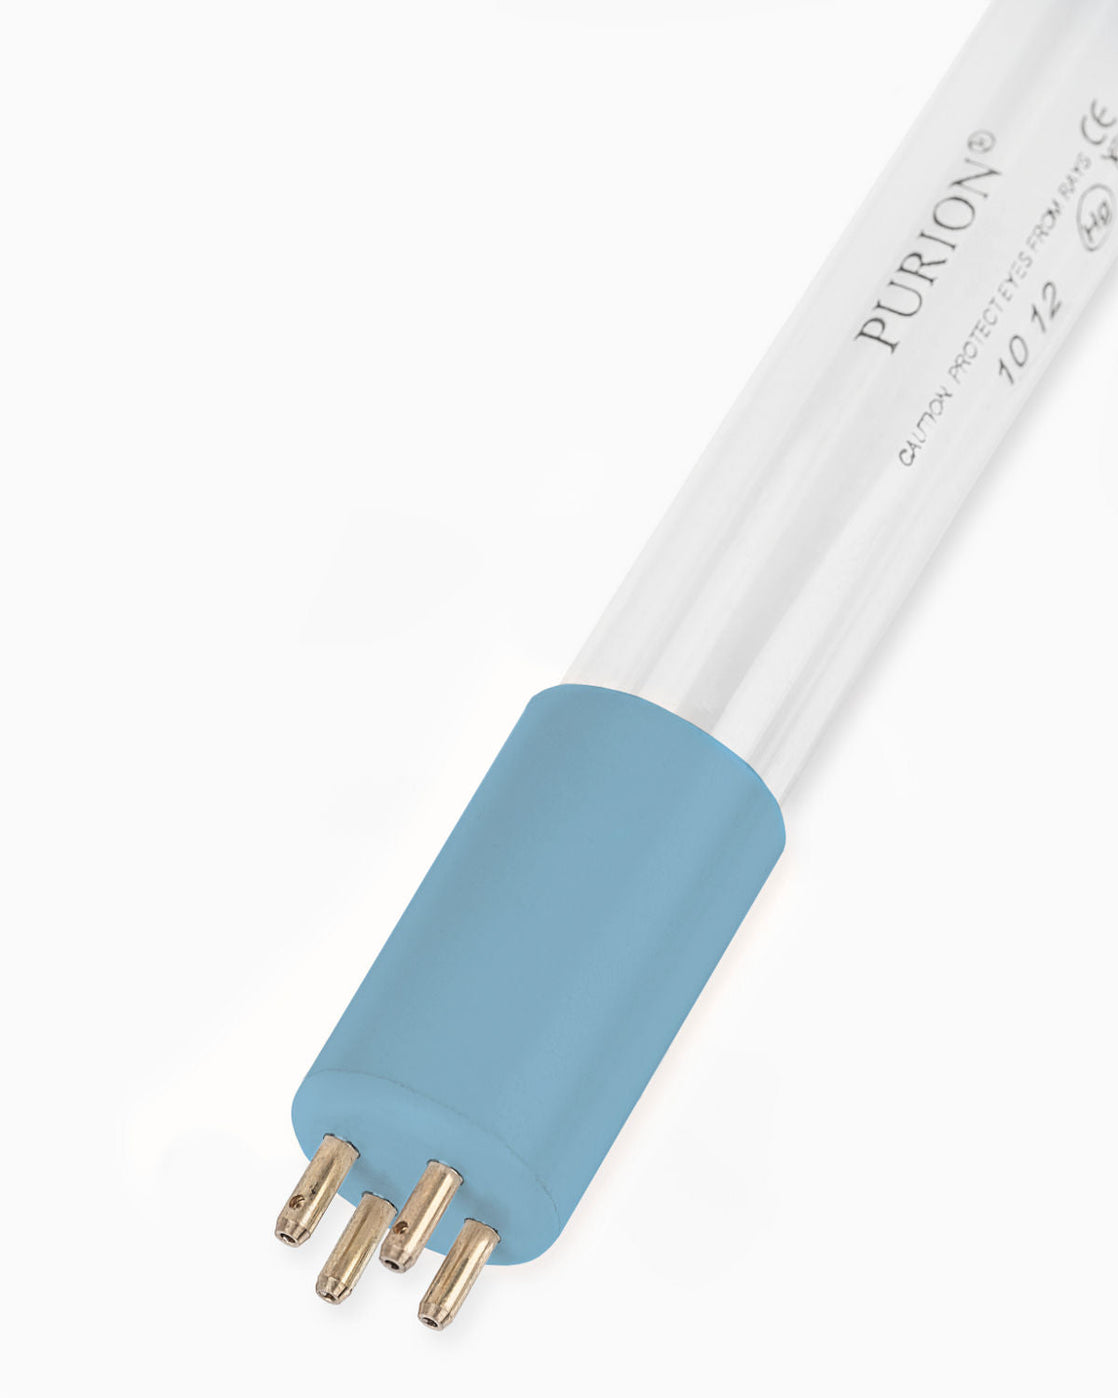 Eine blaue Lichtröhre auf weißem Hintergrund PURION 2500 90 W DUAL OTC UV-C-Desinfektionsanlage der PURION GmbH für keimfreies Wasser.